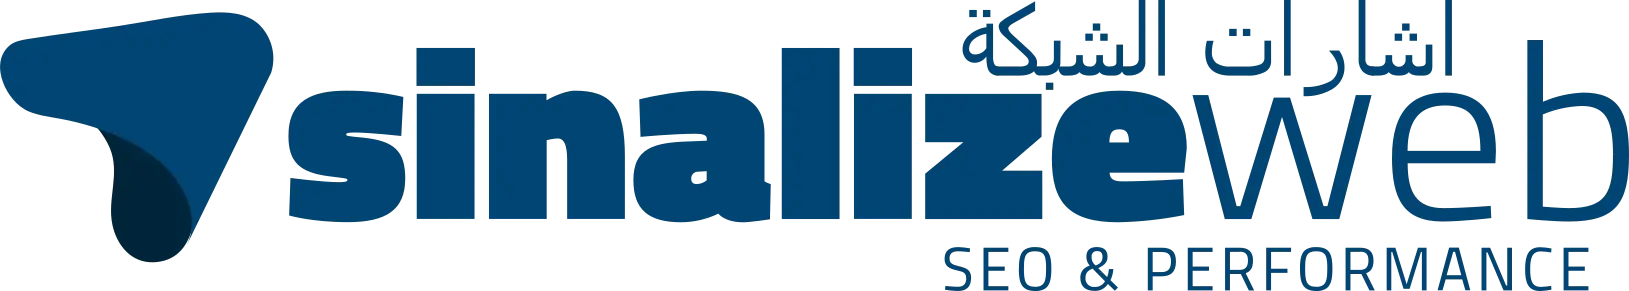 sinalizeweb_logo